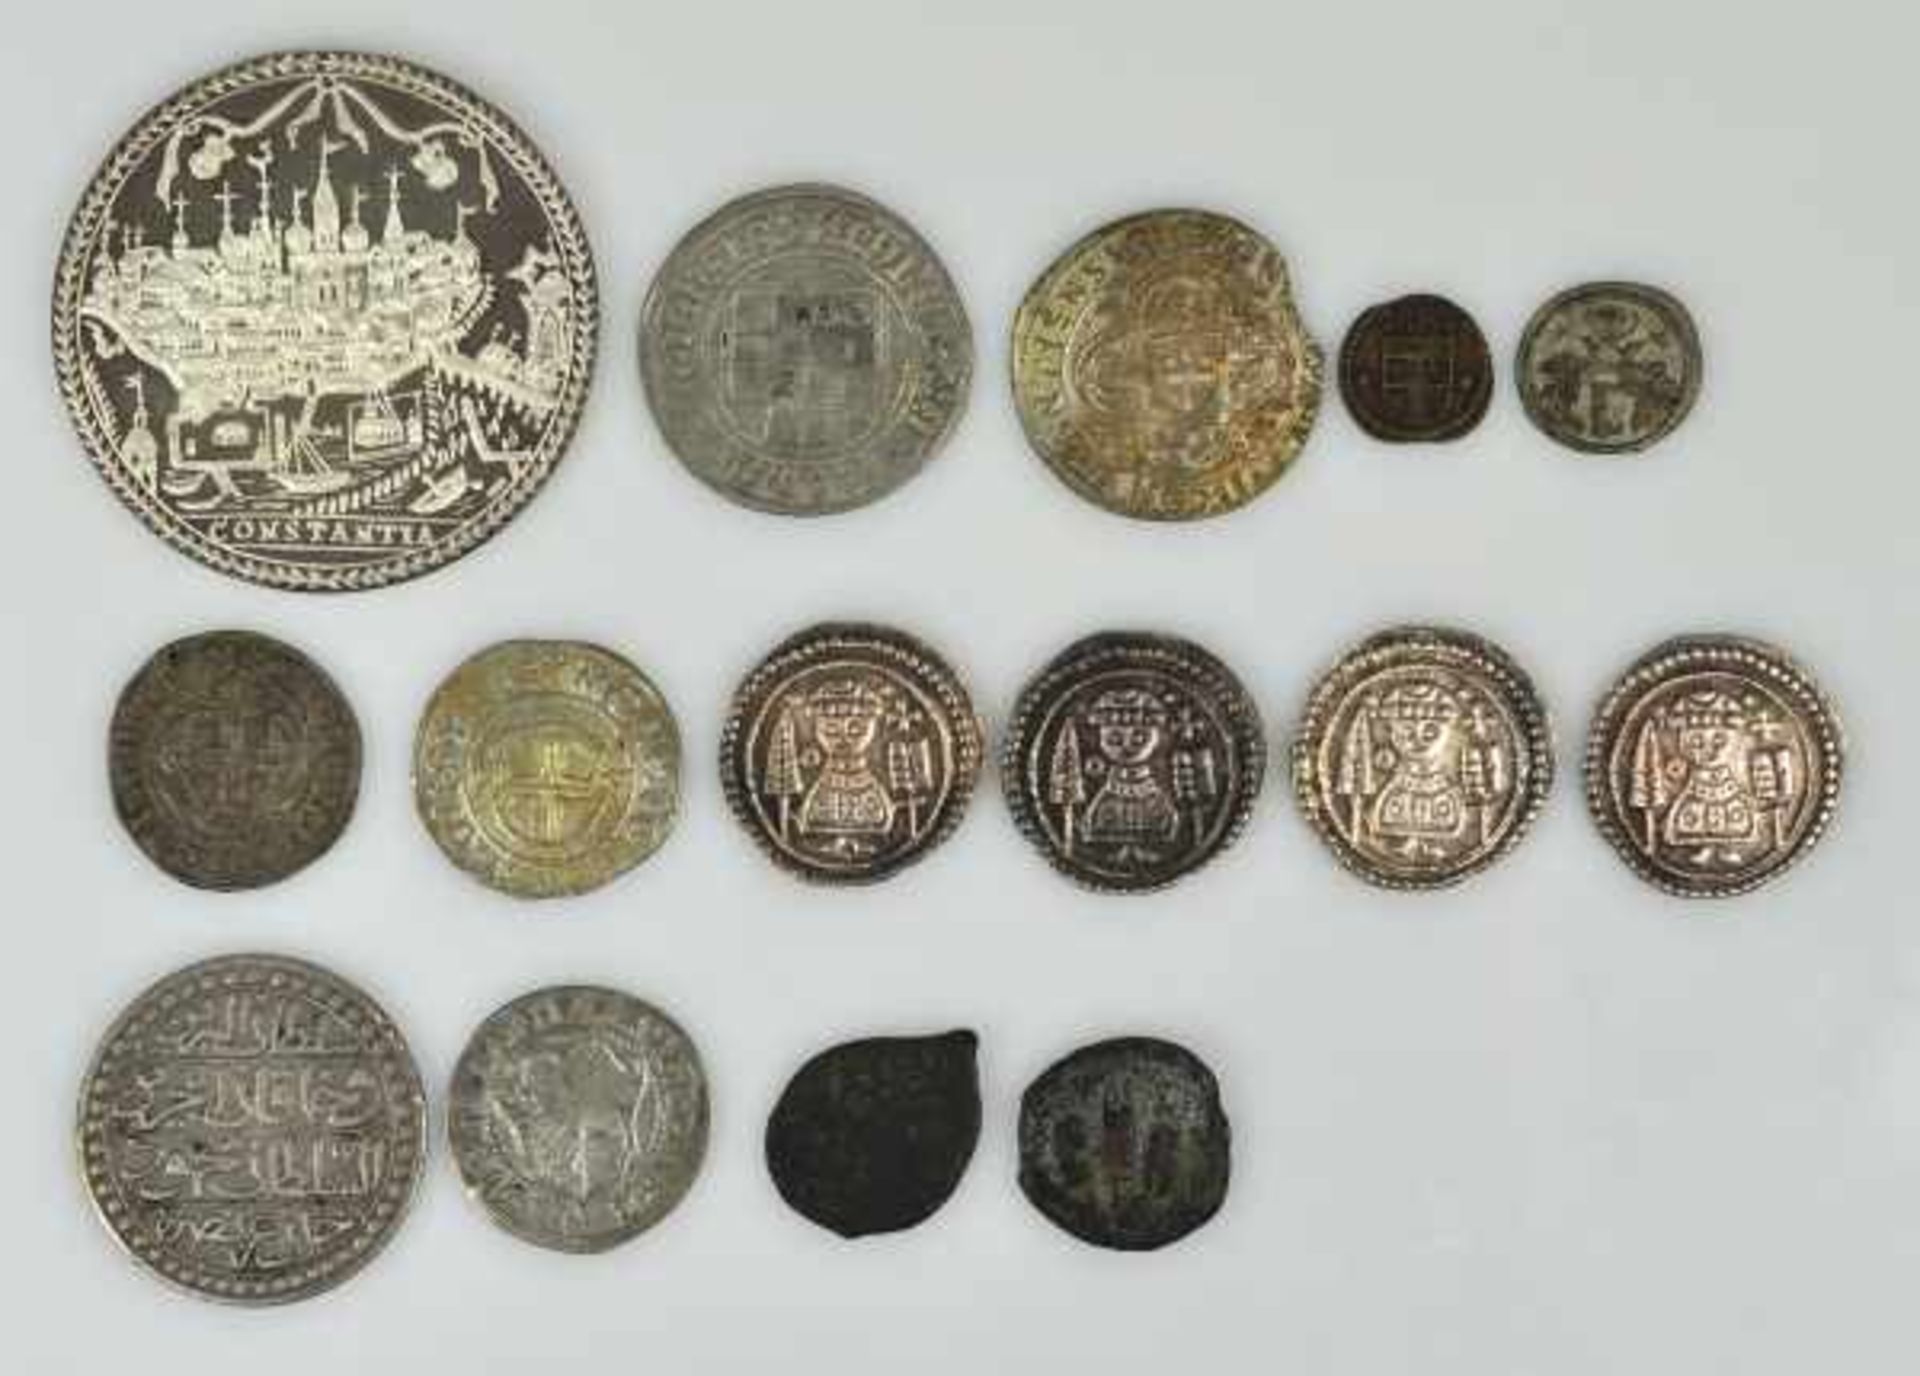 MÜNZEN-LOT(16) bestehend aus 16 Münzen: Neuprägung des sogen. "Regimentstalers" von 1724, Silber;